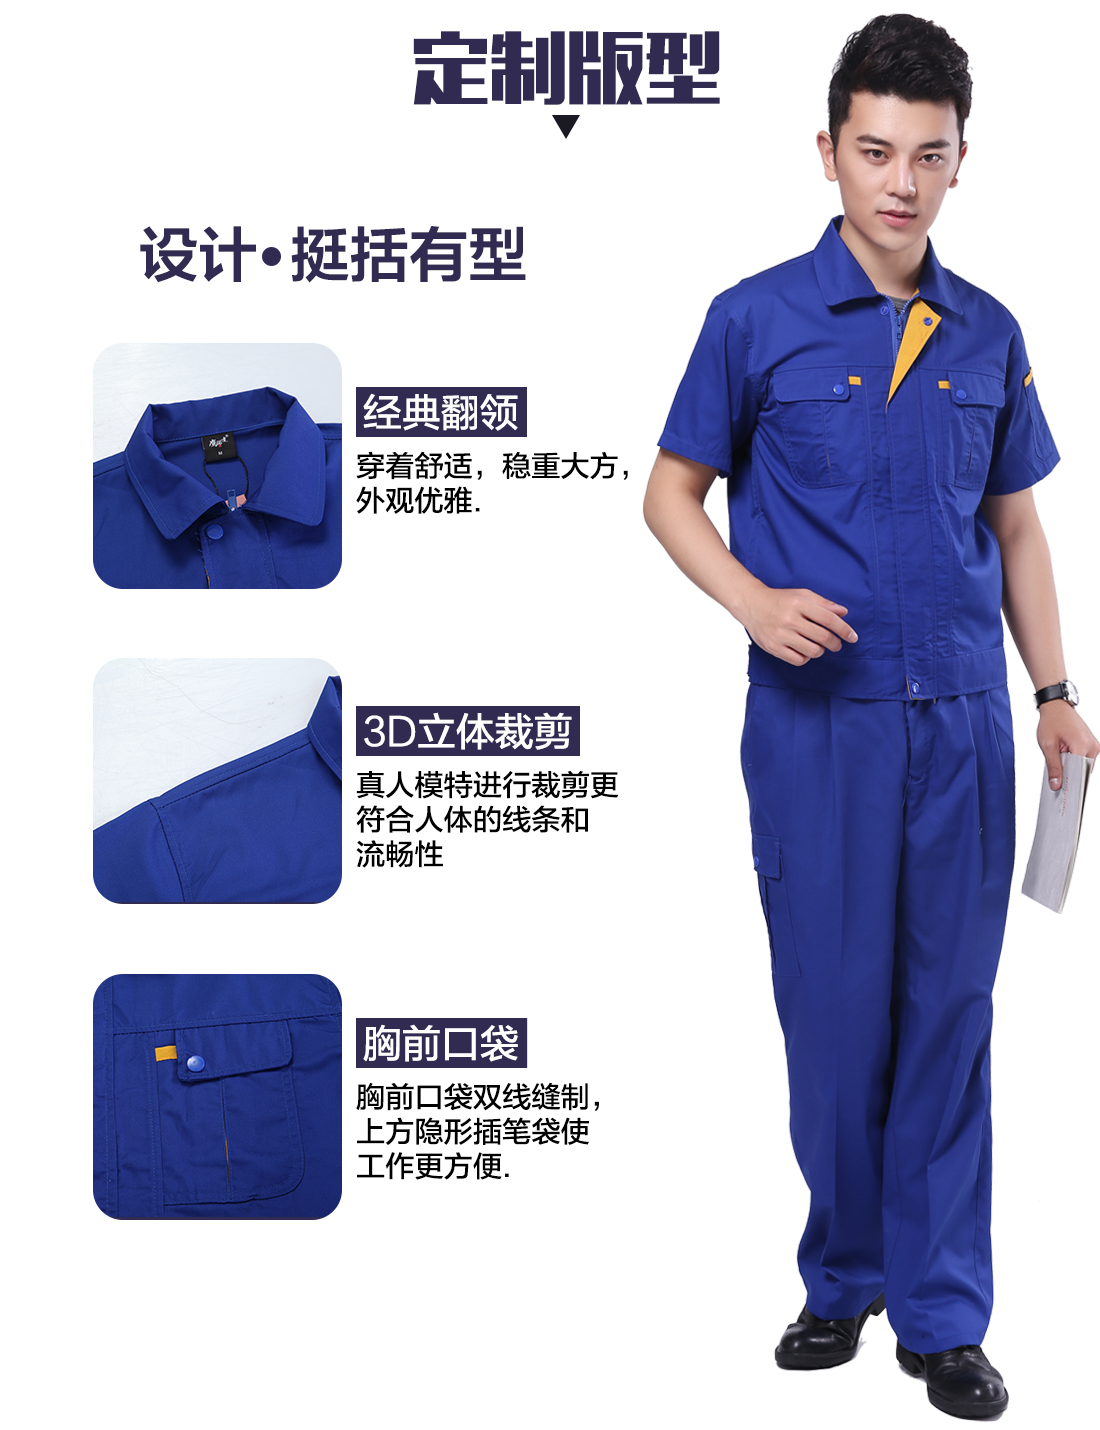 劳保短袖工作服的3D立体版型设计